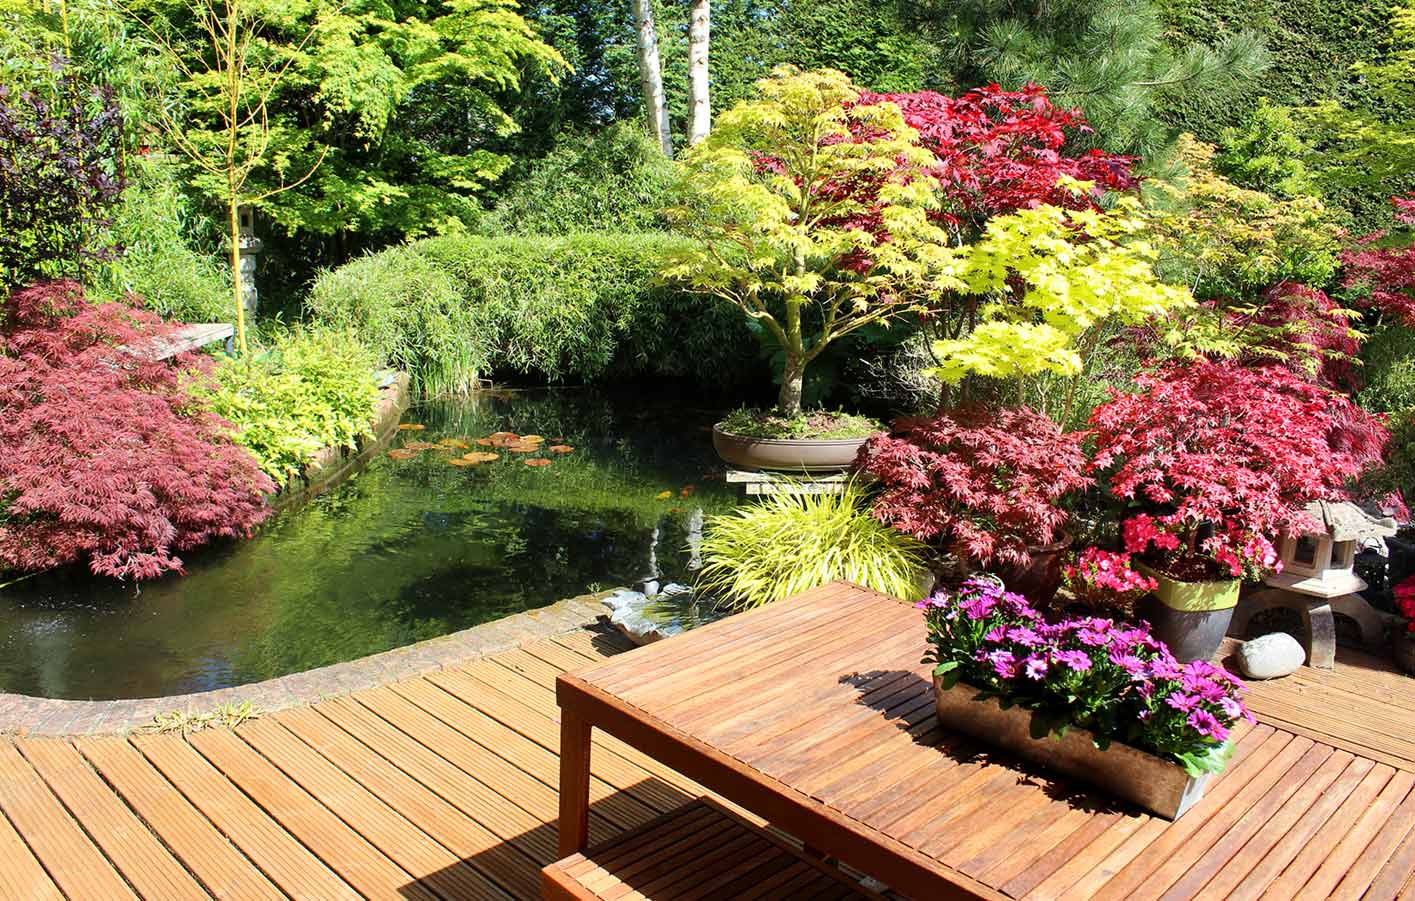 Blick auf eine Terrasse mit Gartenmöbel aus Holz und vielen Pflanzen drumherum